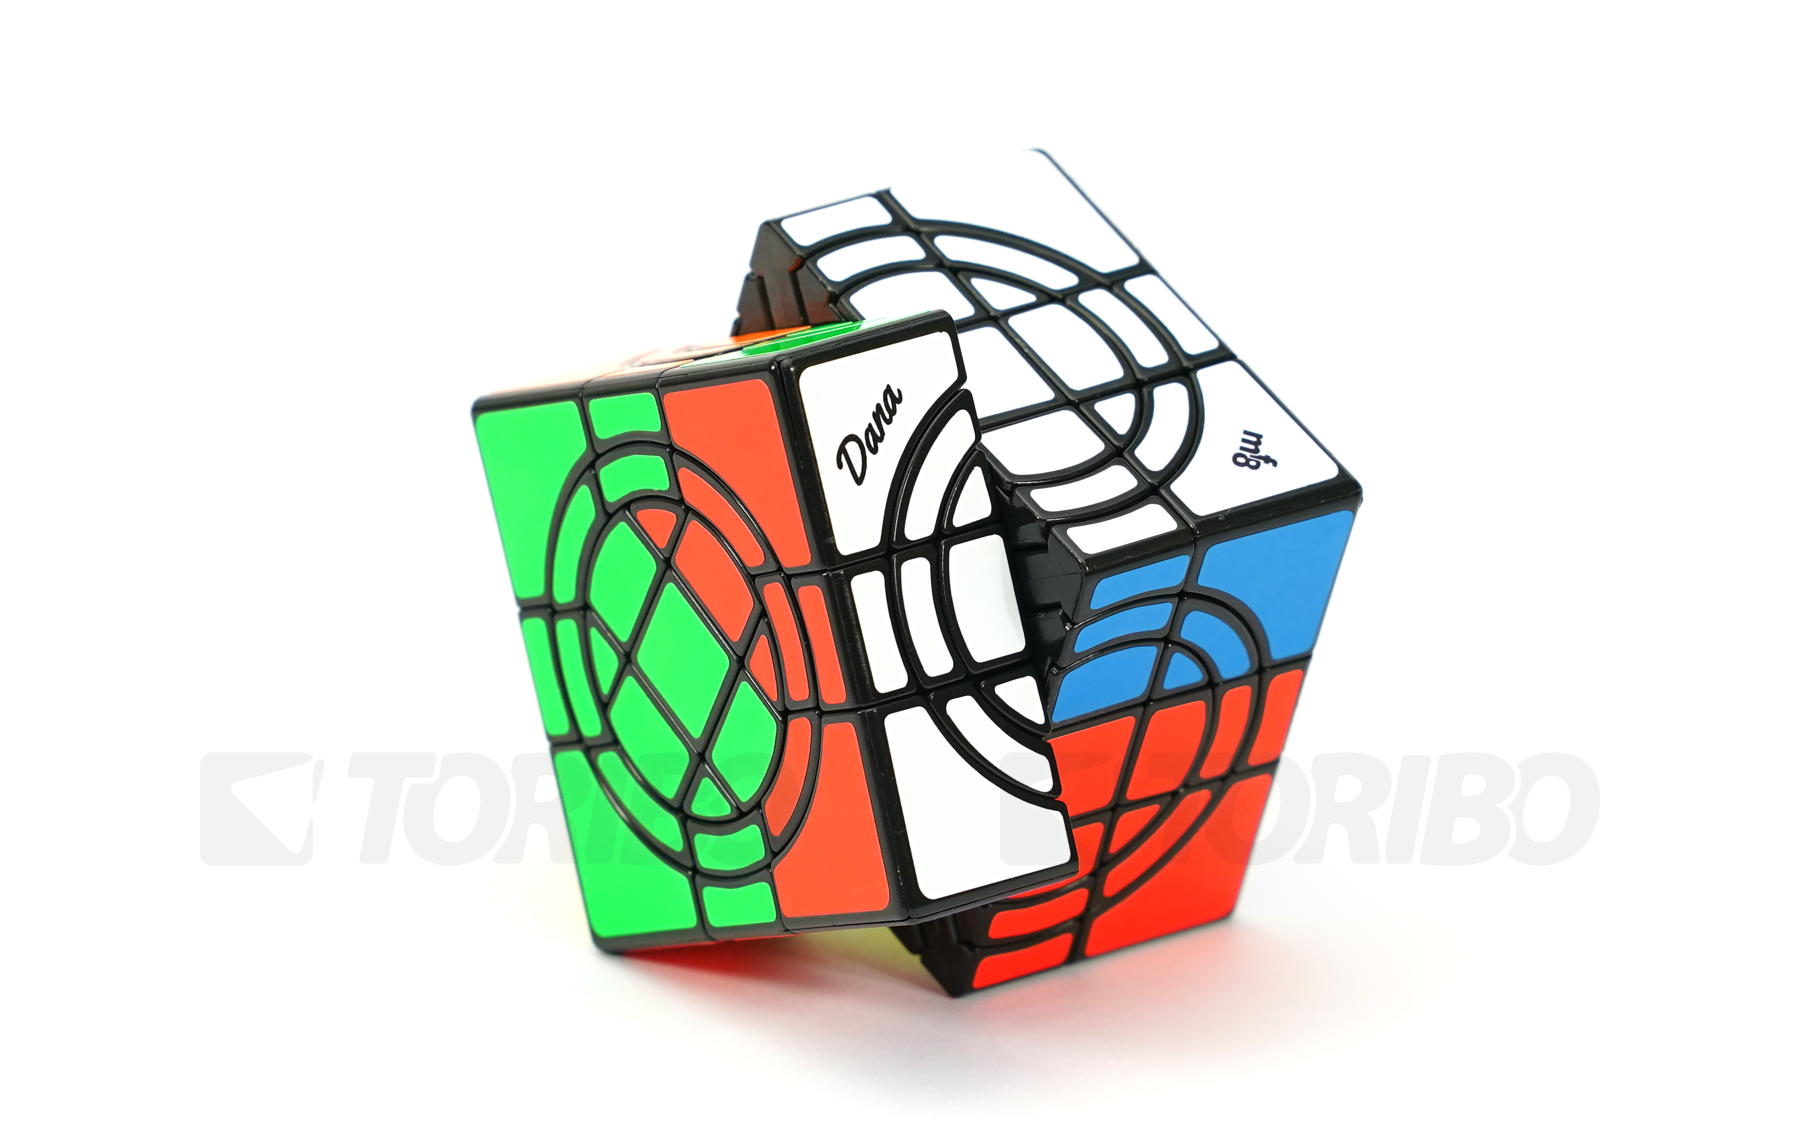 TORIBOストア / mf8 Double Crazy Cube